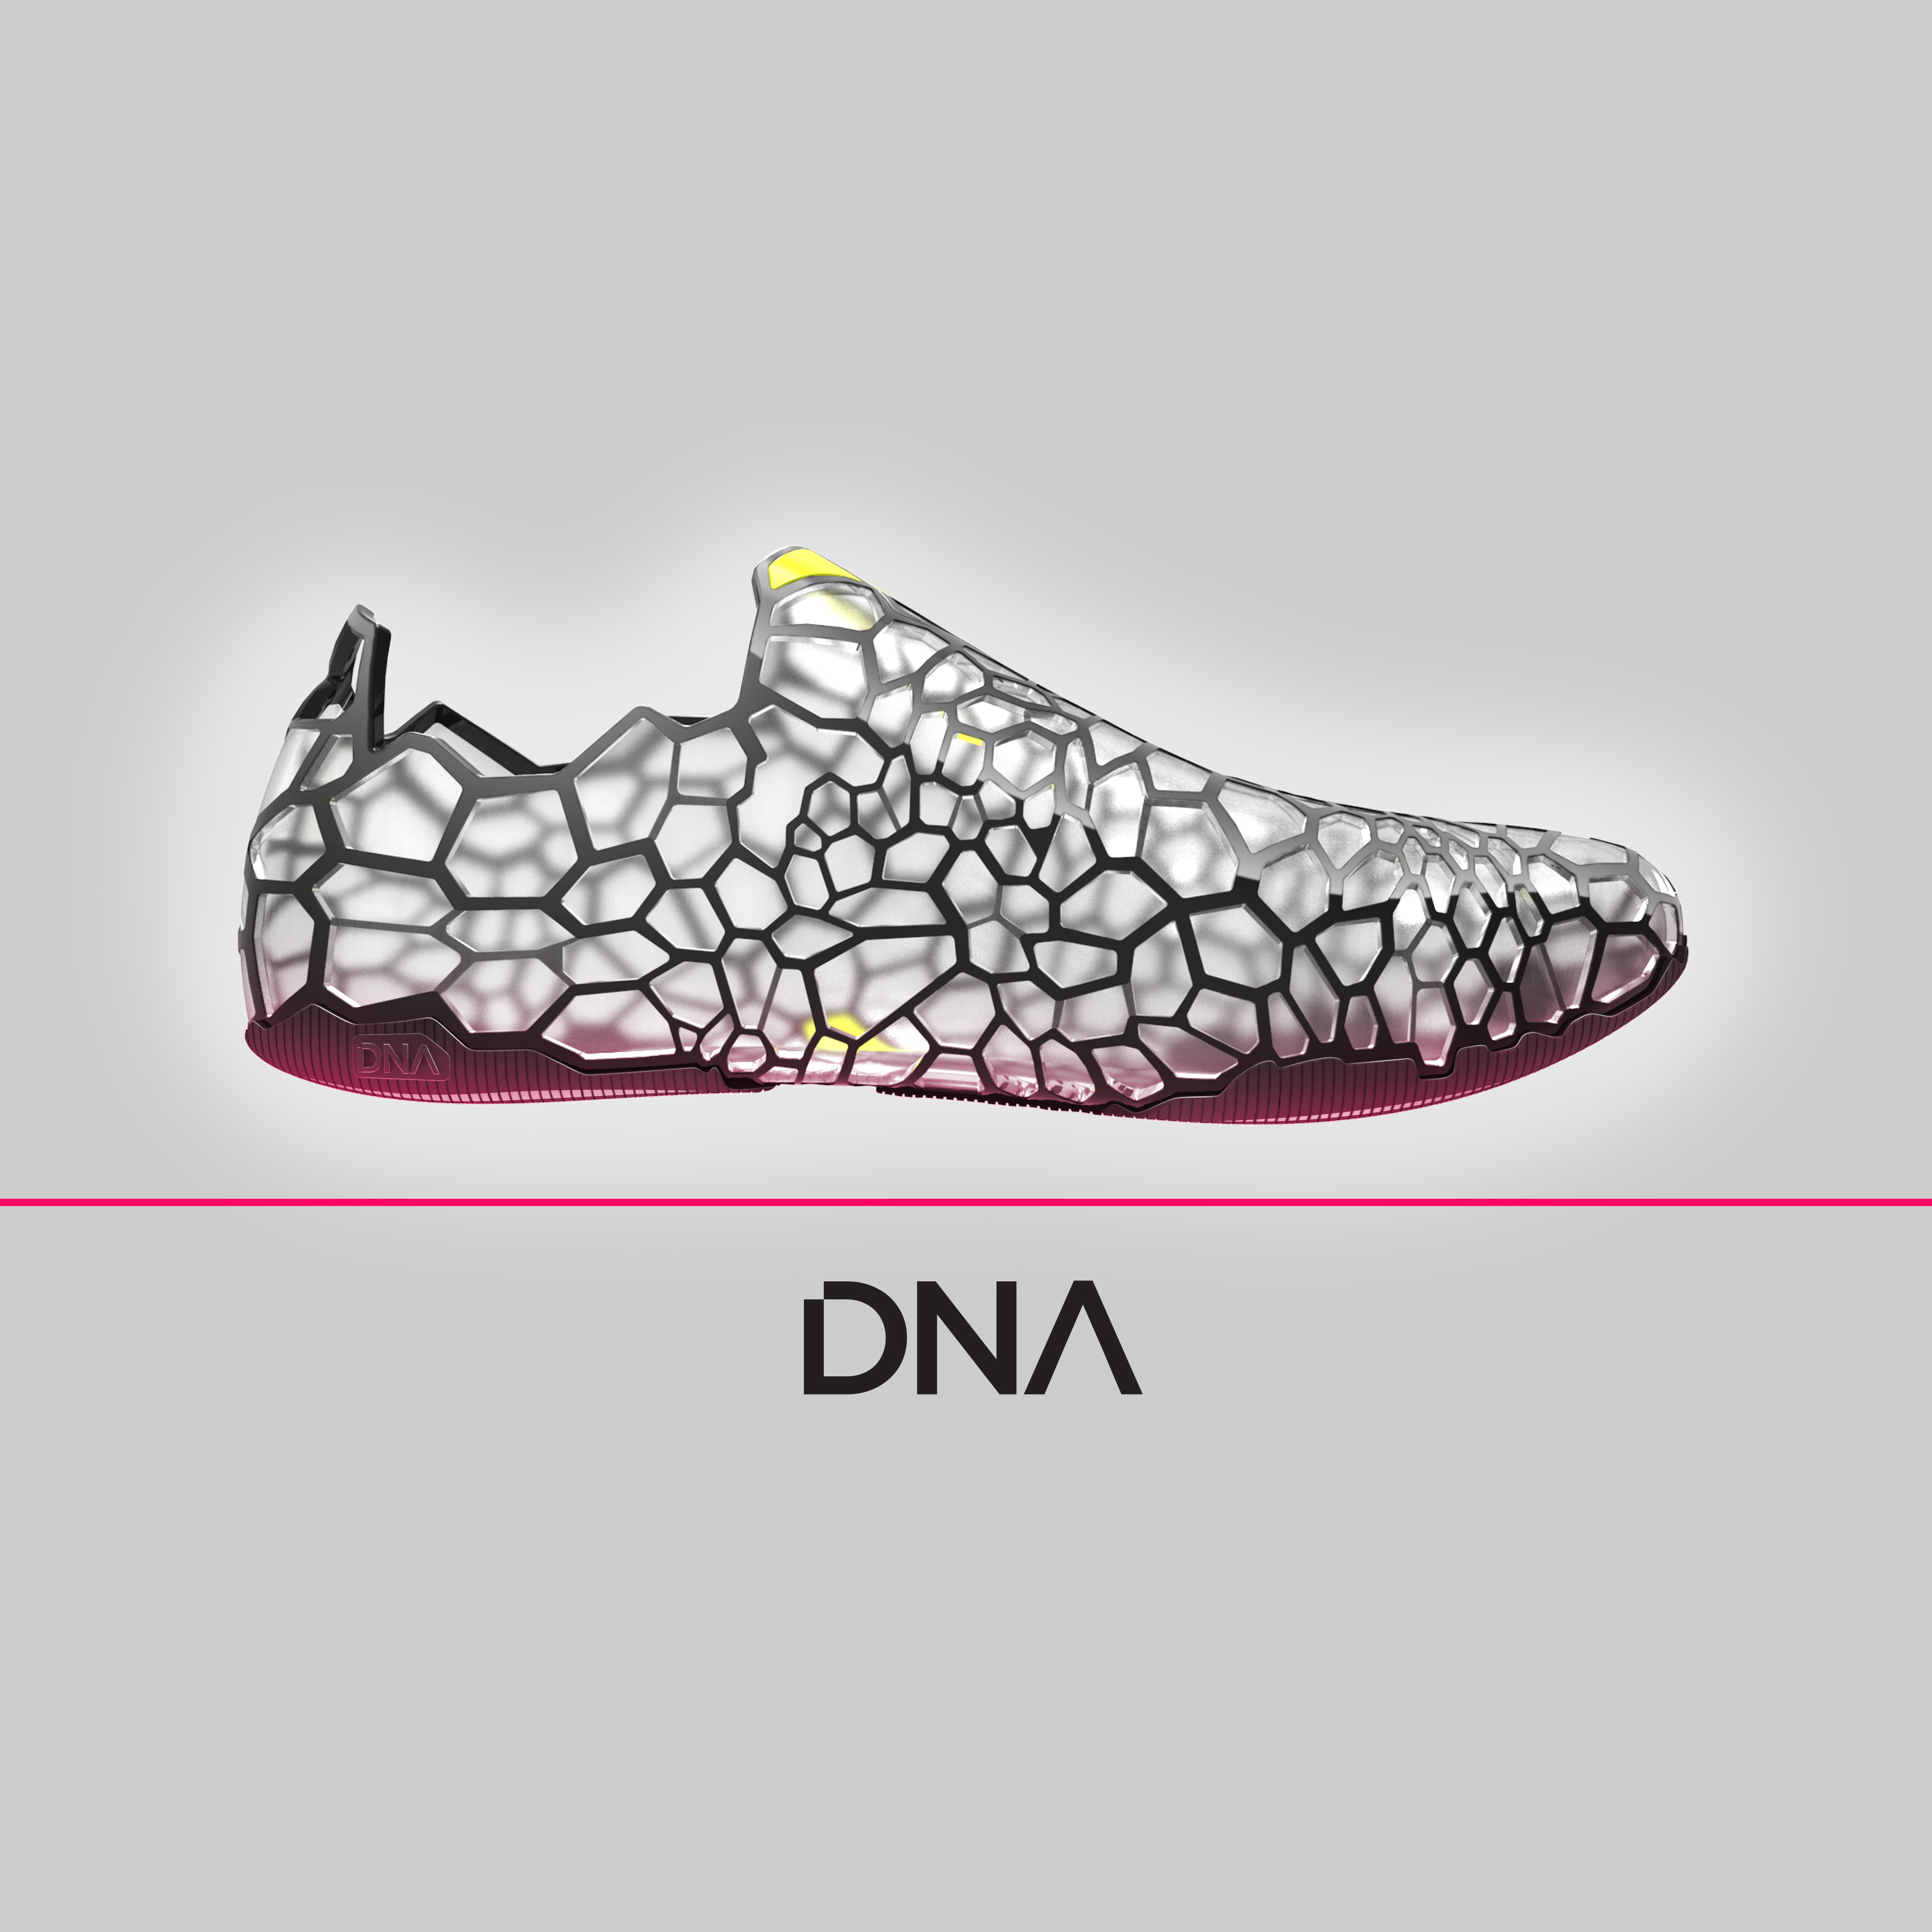 Pensar DNA Shoe Concept